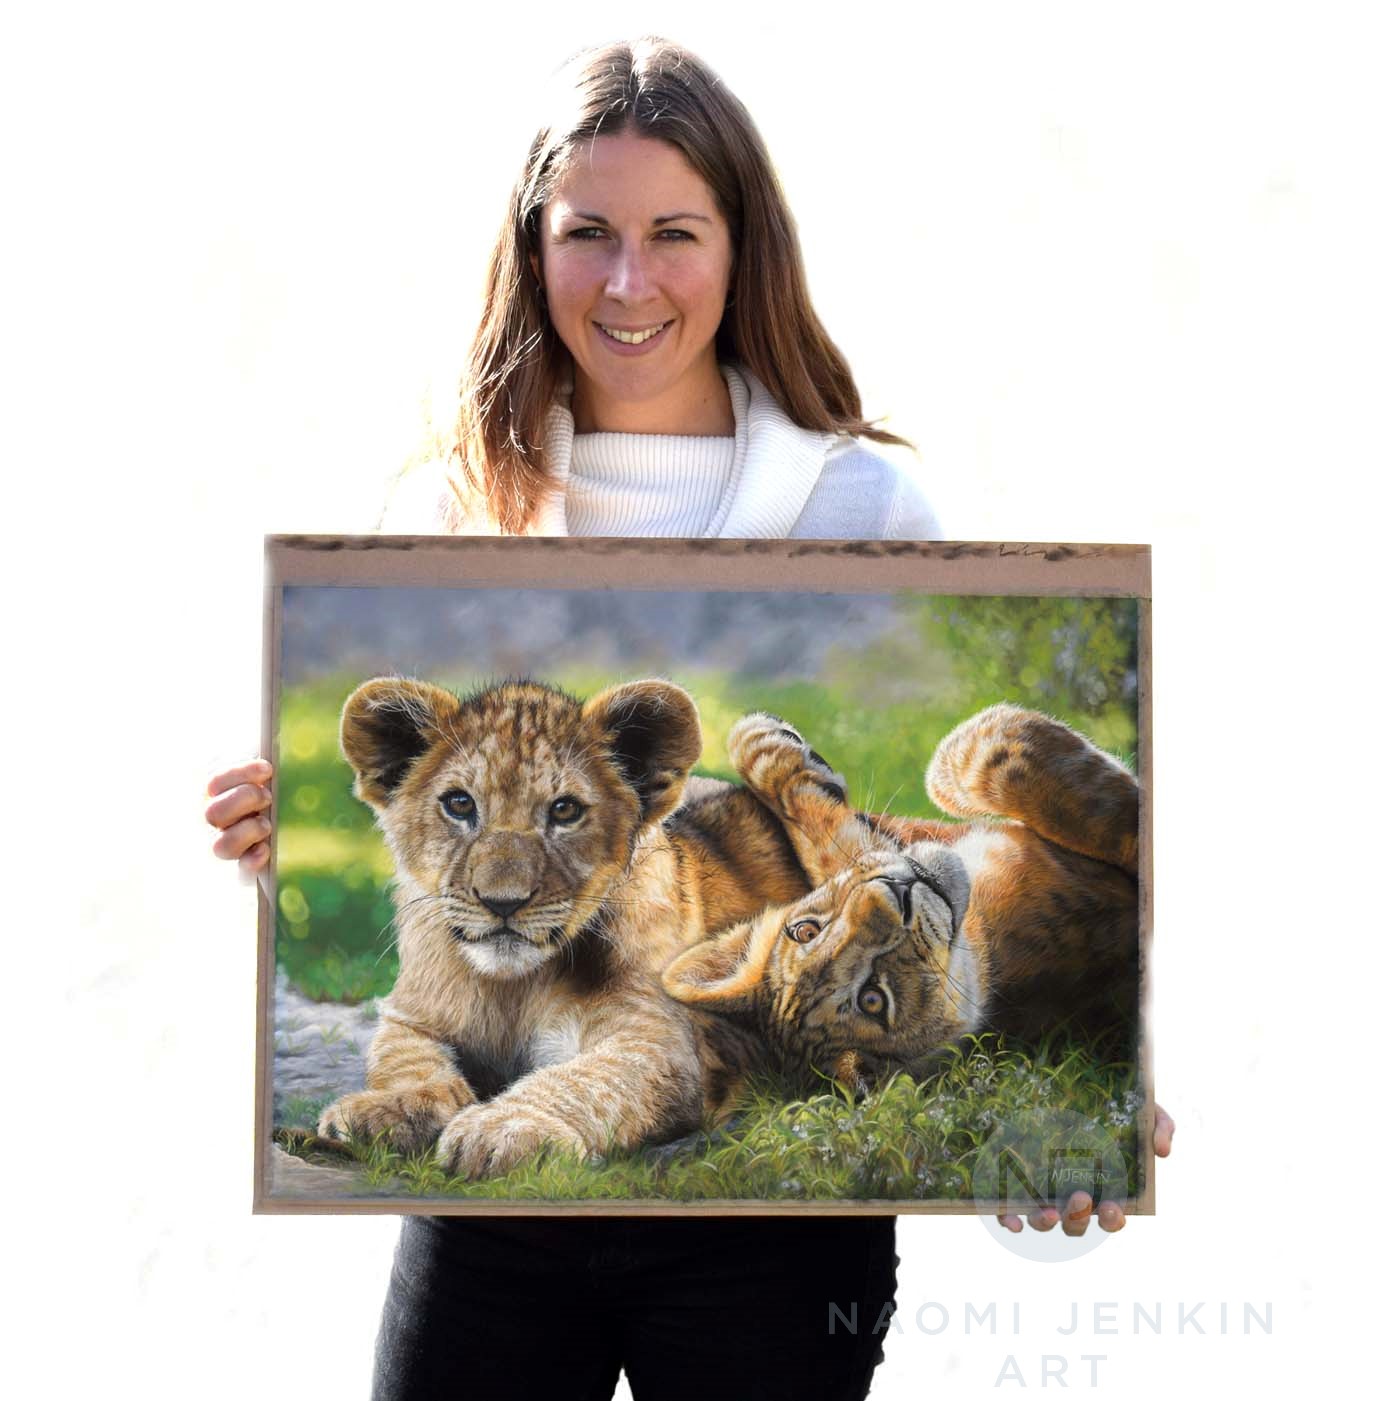 Wildlife artist Naomi Jenkin